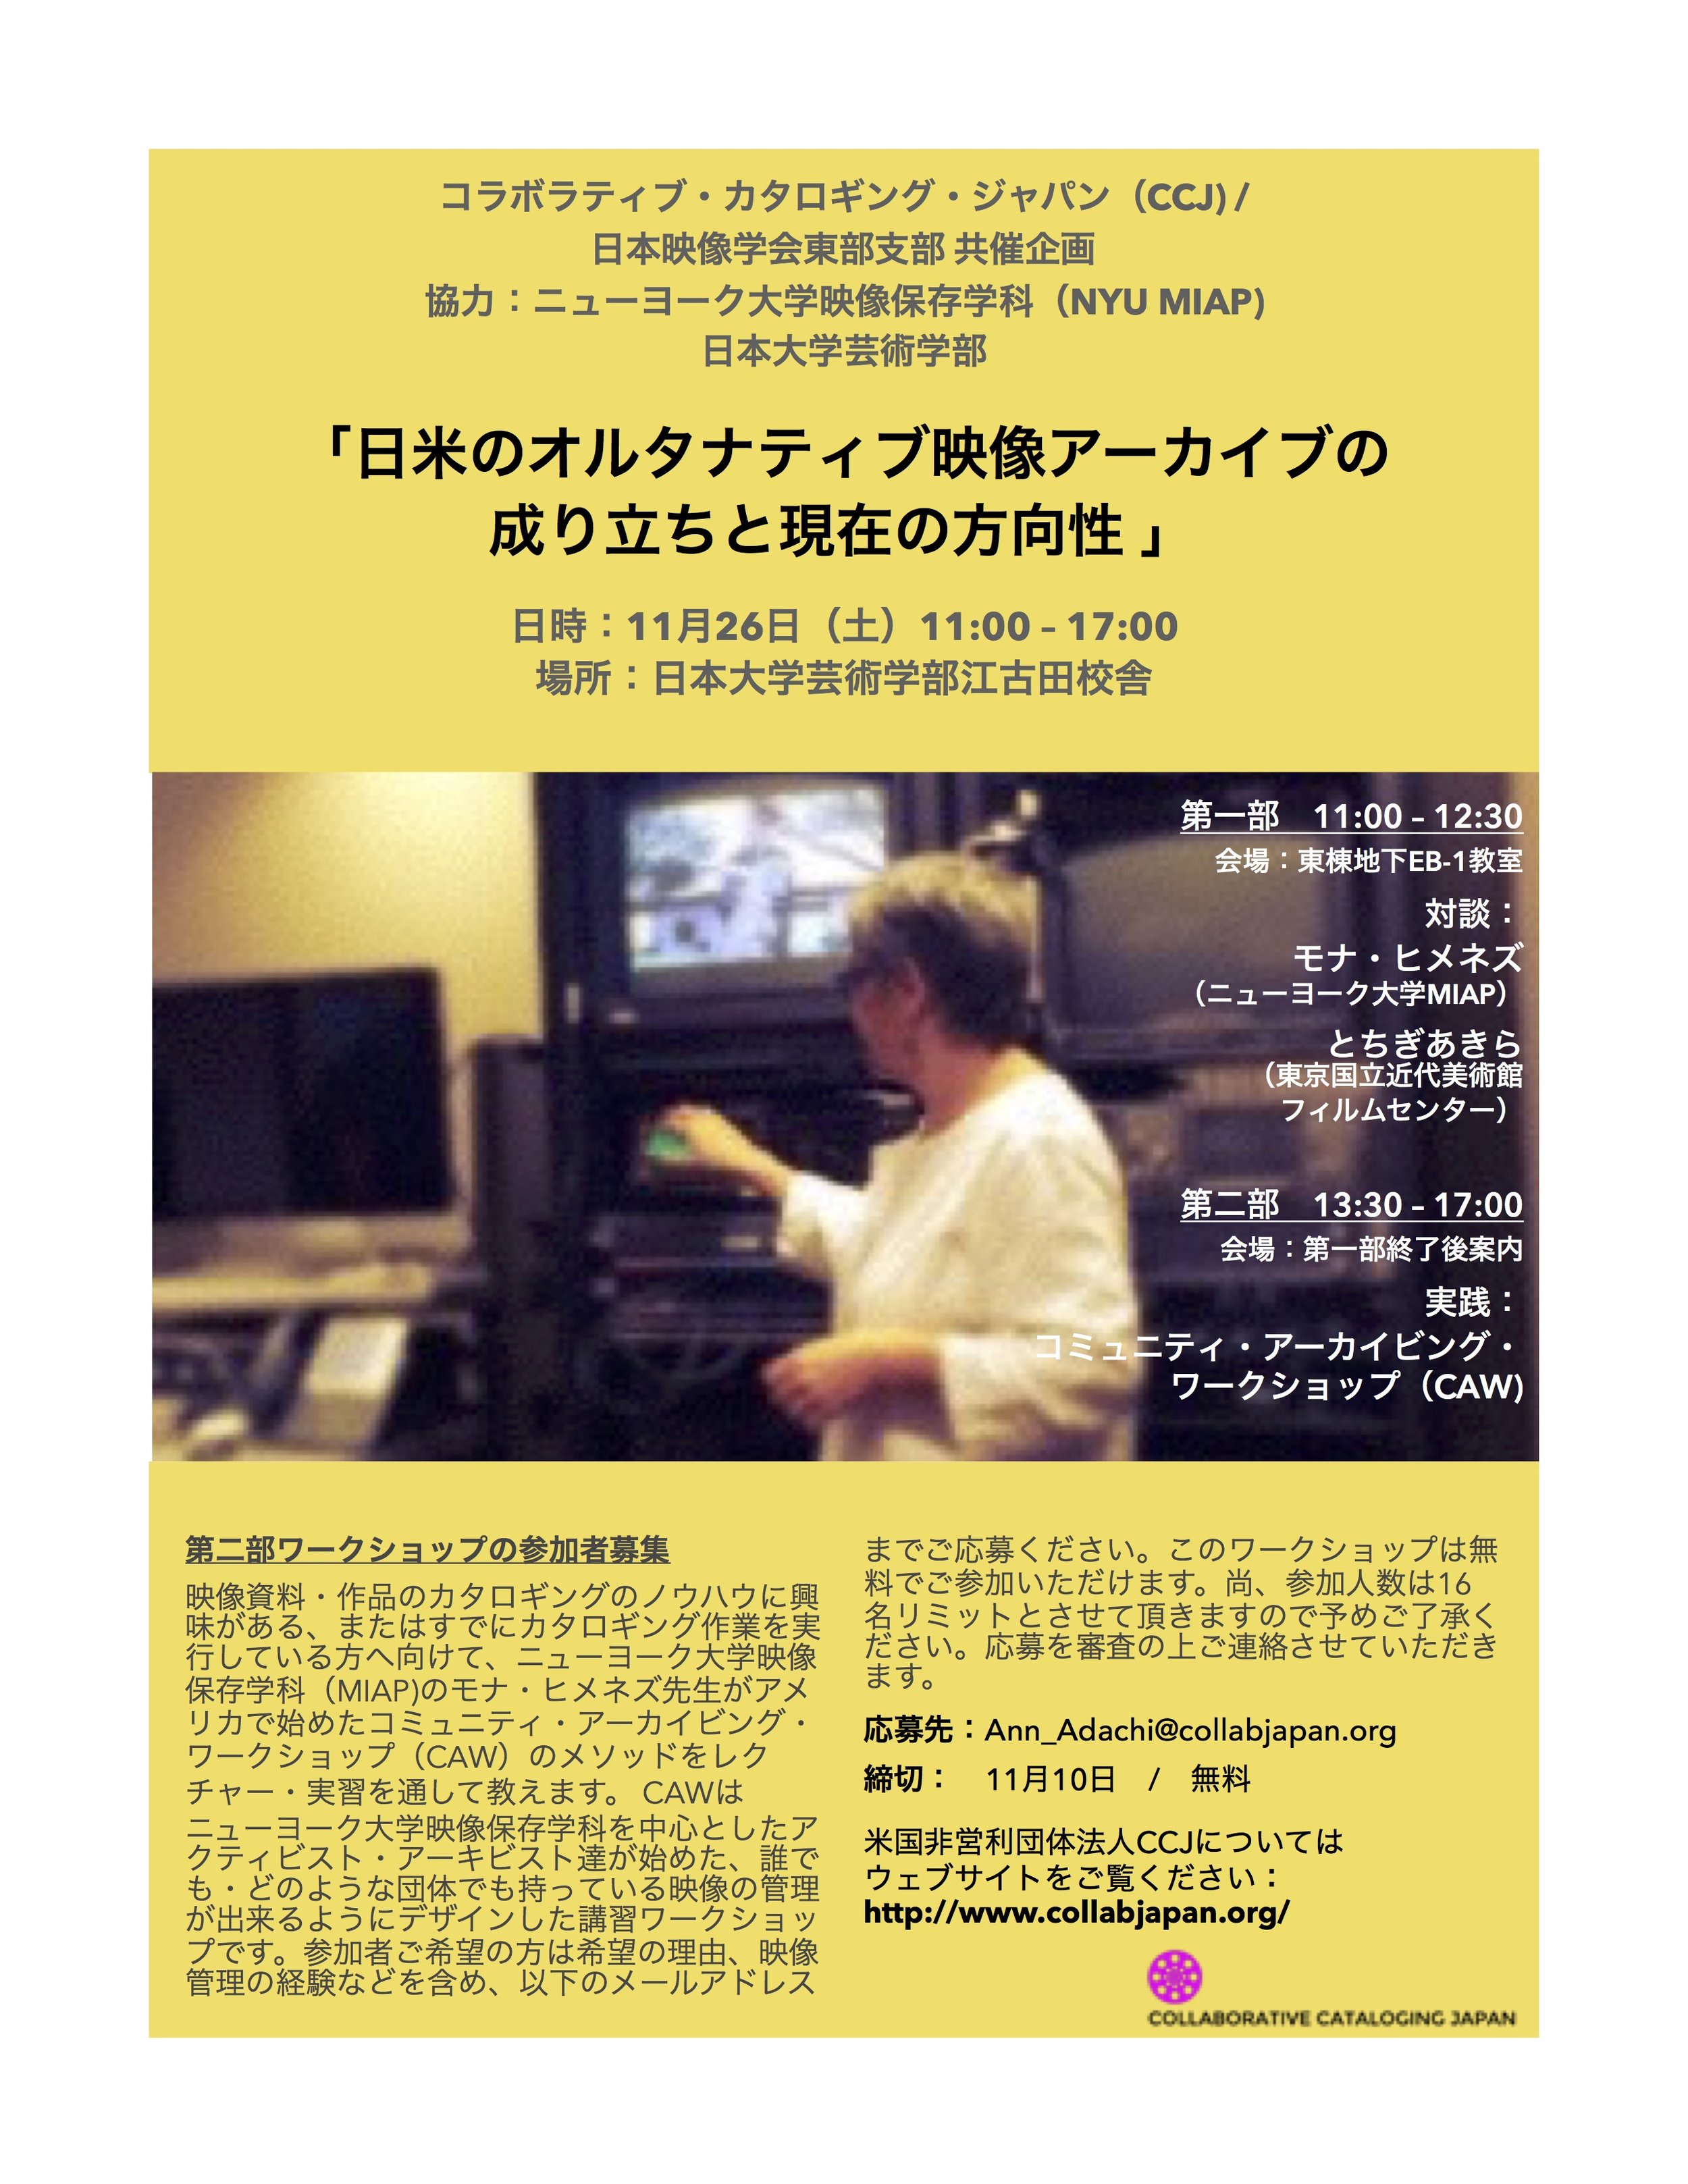 日米のオルタナティブ 映像アーカイブの成り立ちと現在で方向性 Collaborative Cataloging Japan